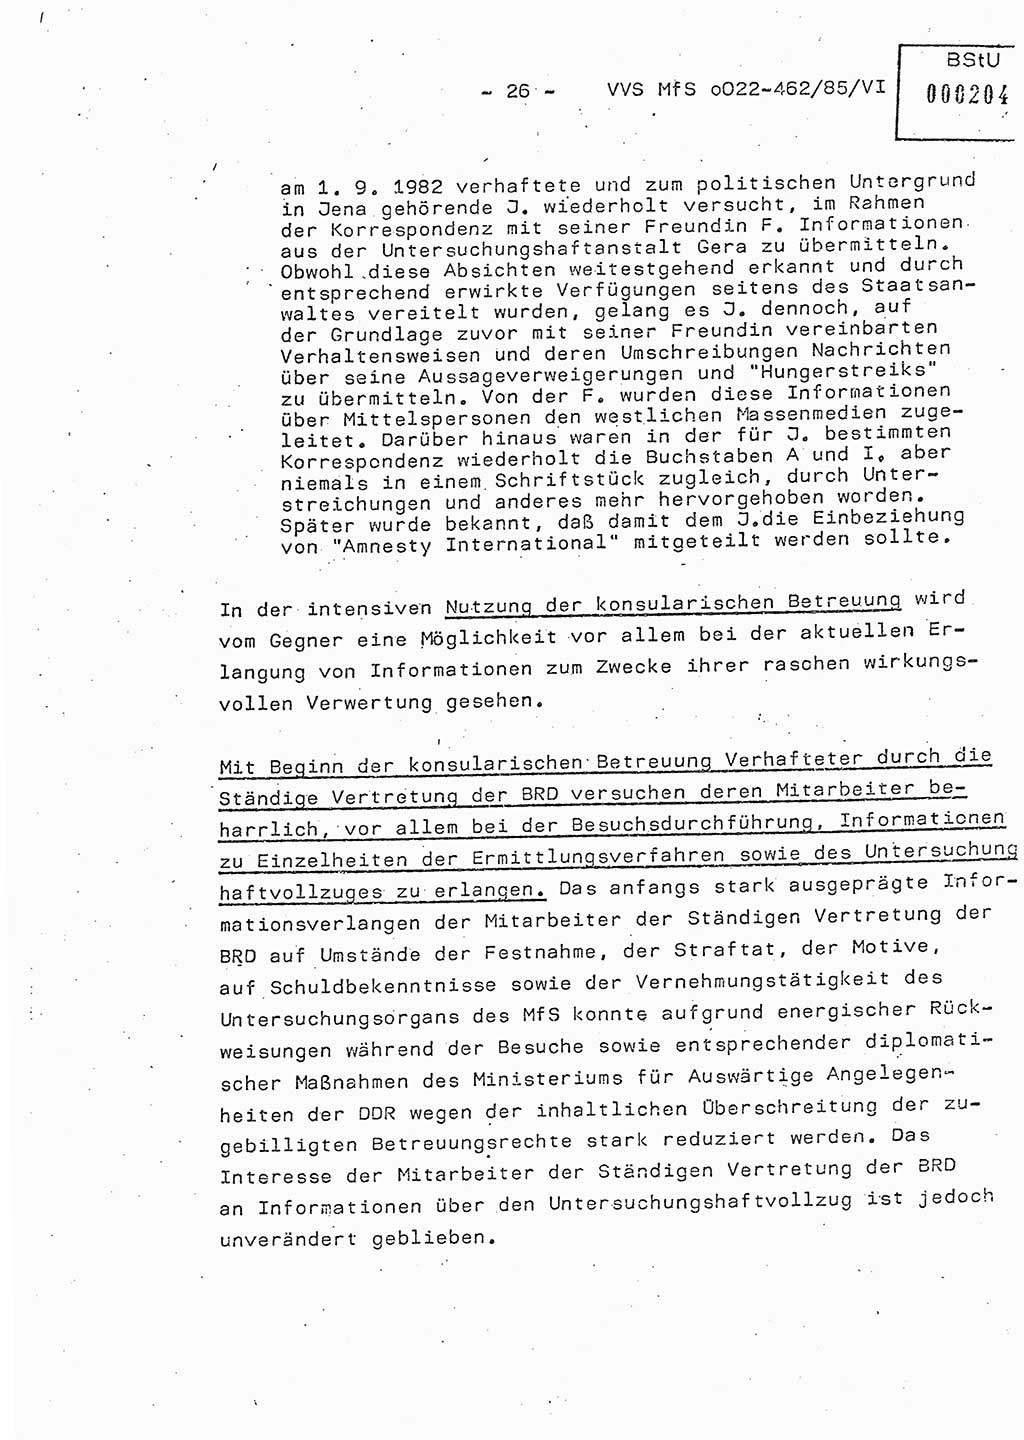 Der Untersuchungshaftvollzug im MfS, Schulungsmaterial Teil Ⅵ, Ministerium für Staatssicherheit [Deutsche Demokratische Republik (DDR)], Abteilung (Abt.) ⅩⅣ, Vertrauliche Verschlußsache (VVS) o022-462/85/Ⅵ, Berlin 1985, Seite 26 (Sch.-Mat. Ⅵ MfS DDR Abt. ⅩⅣ VVS o022-462/85/Ⅵ 1985, S. 26)